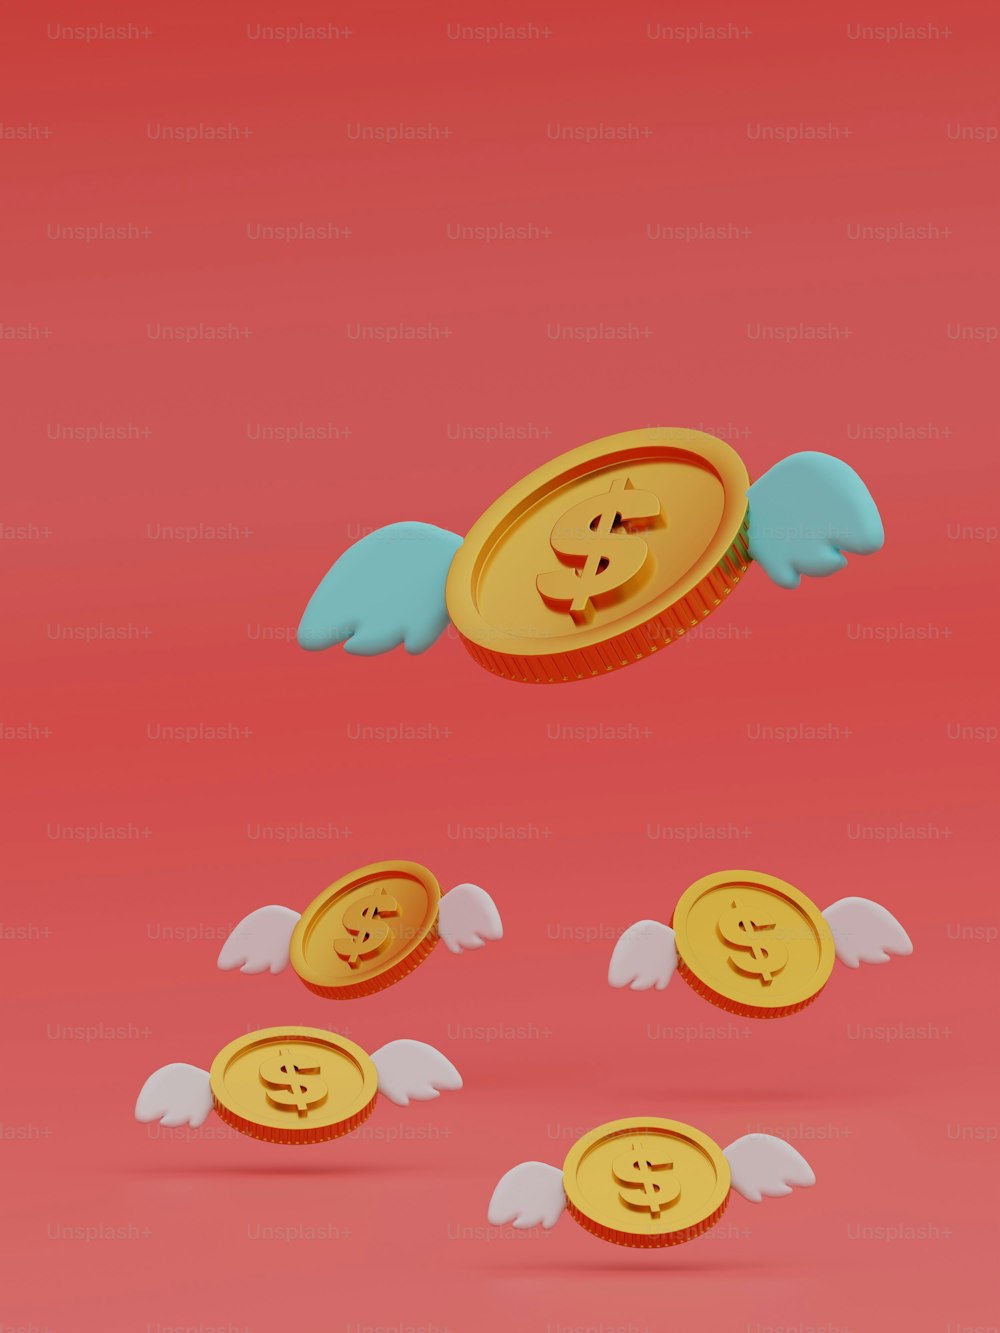 Ein Bündel Münzen mit Engelsflügeln um sie herum